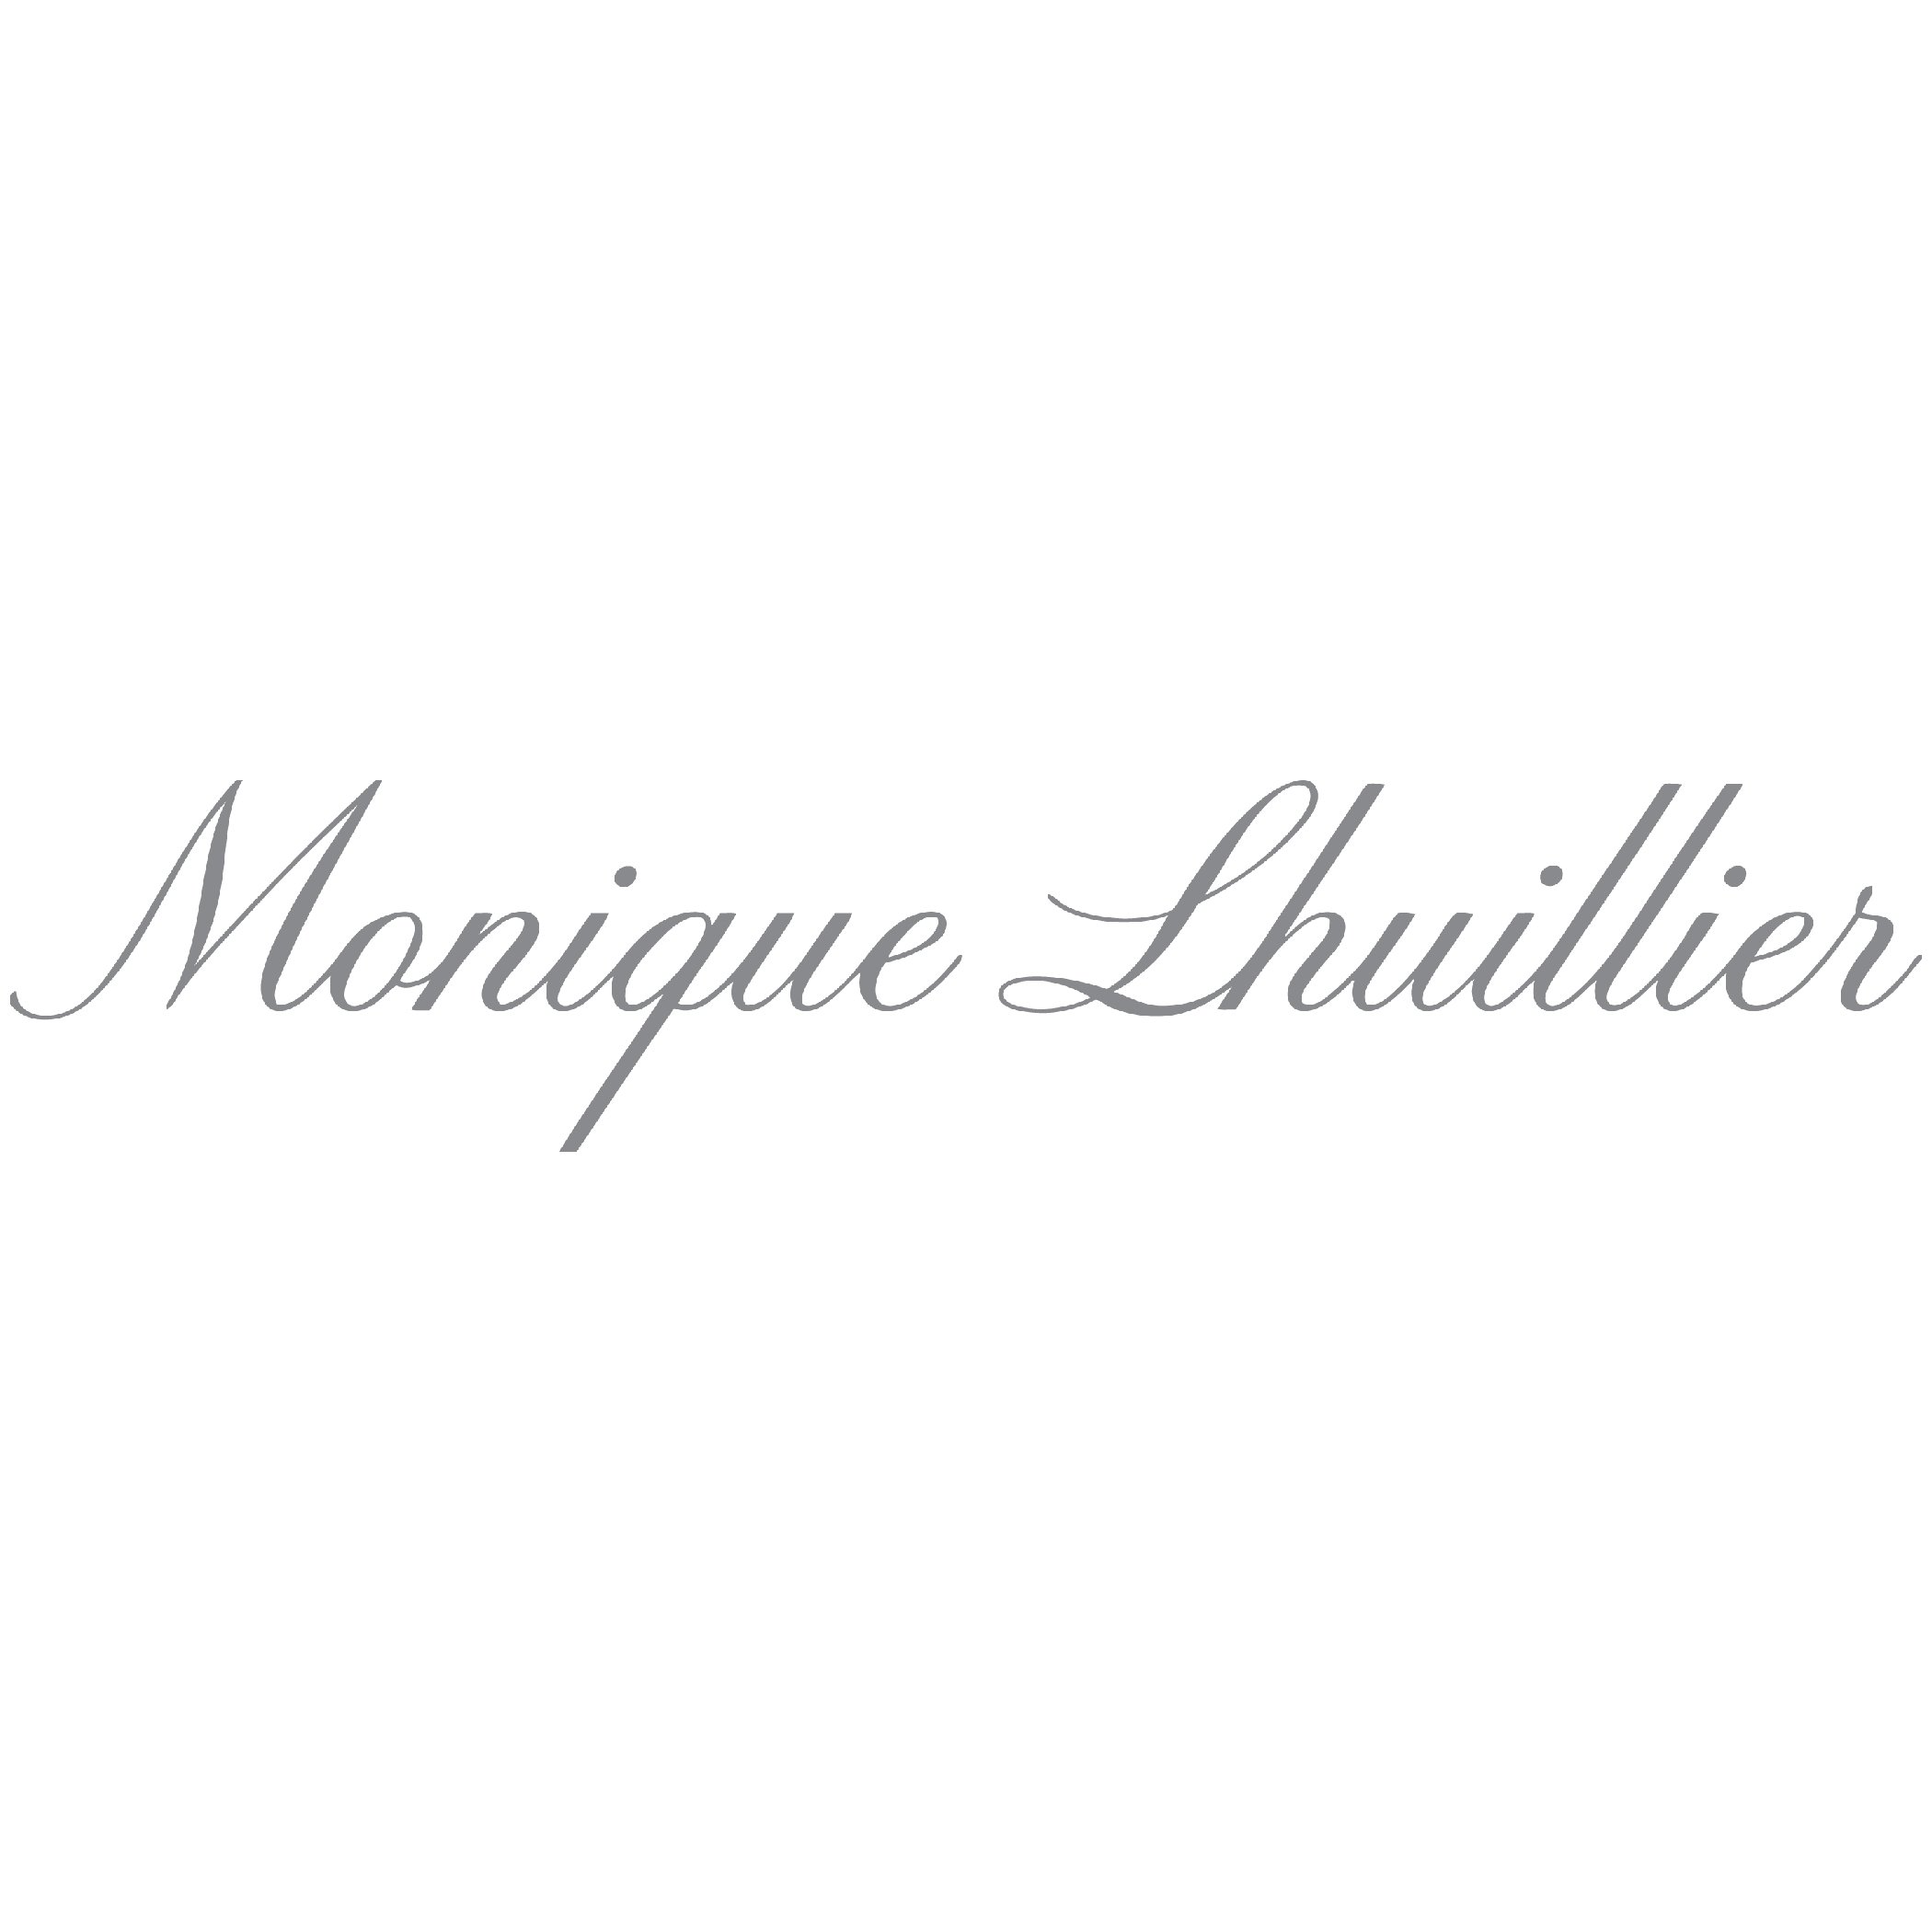 Monique Lhuillier